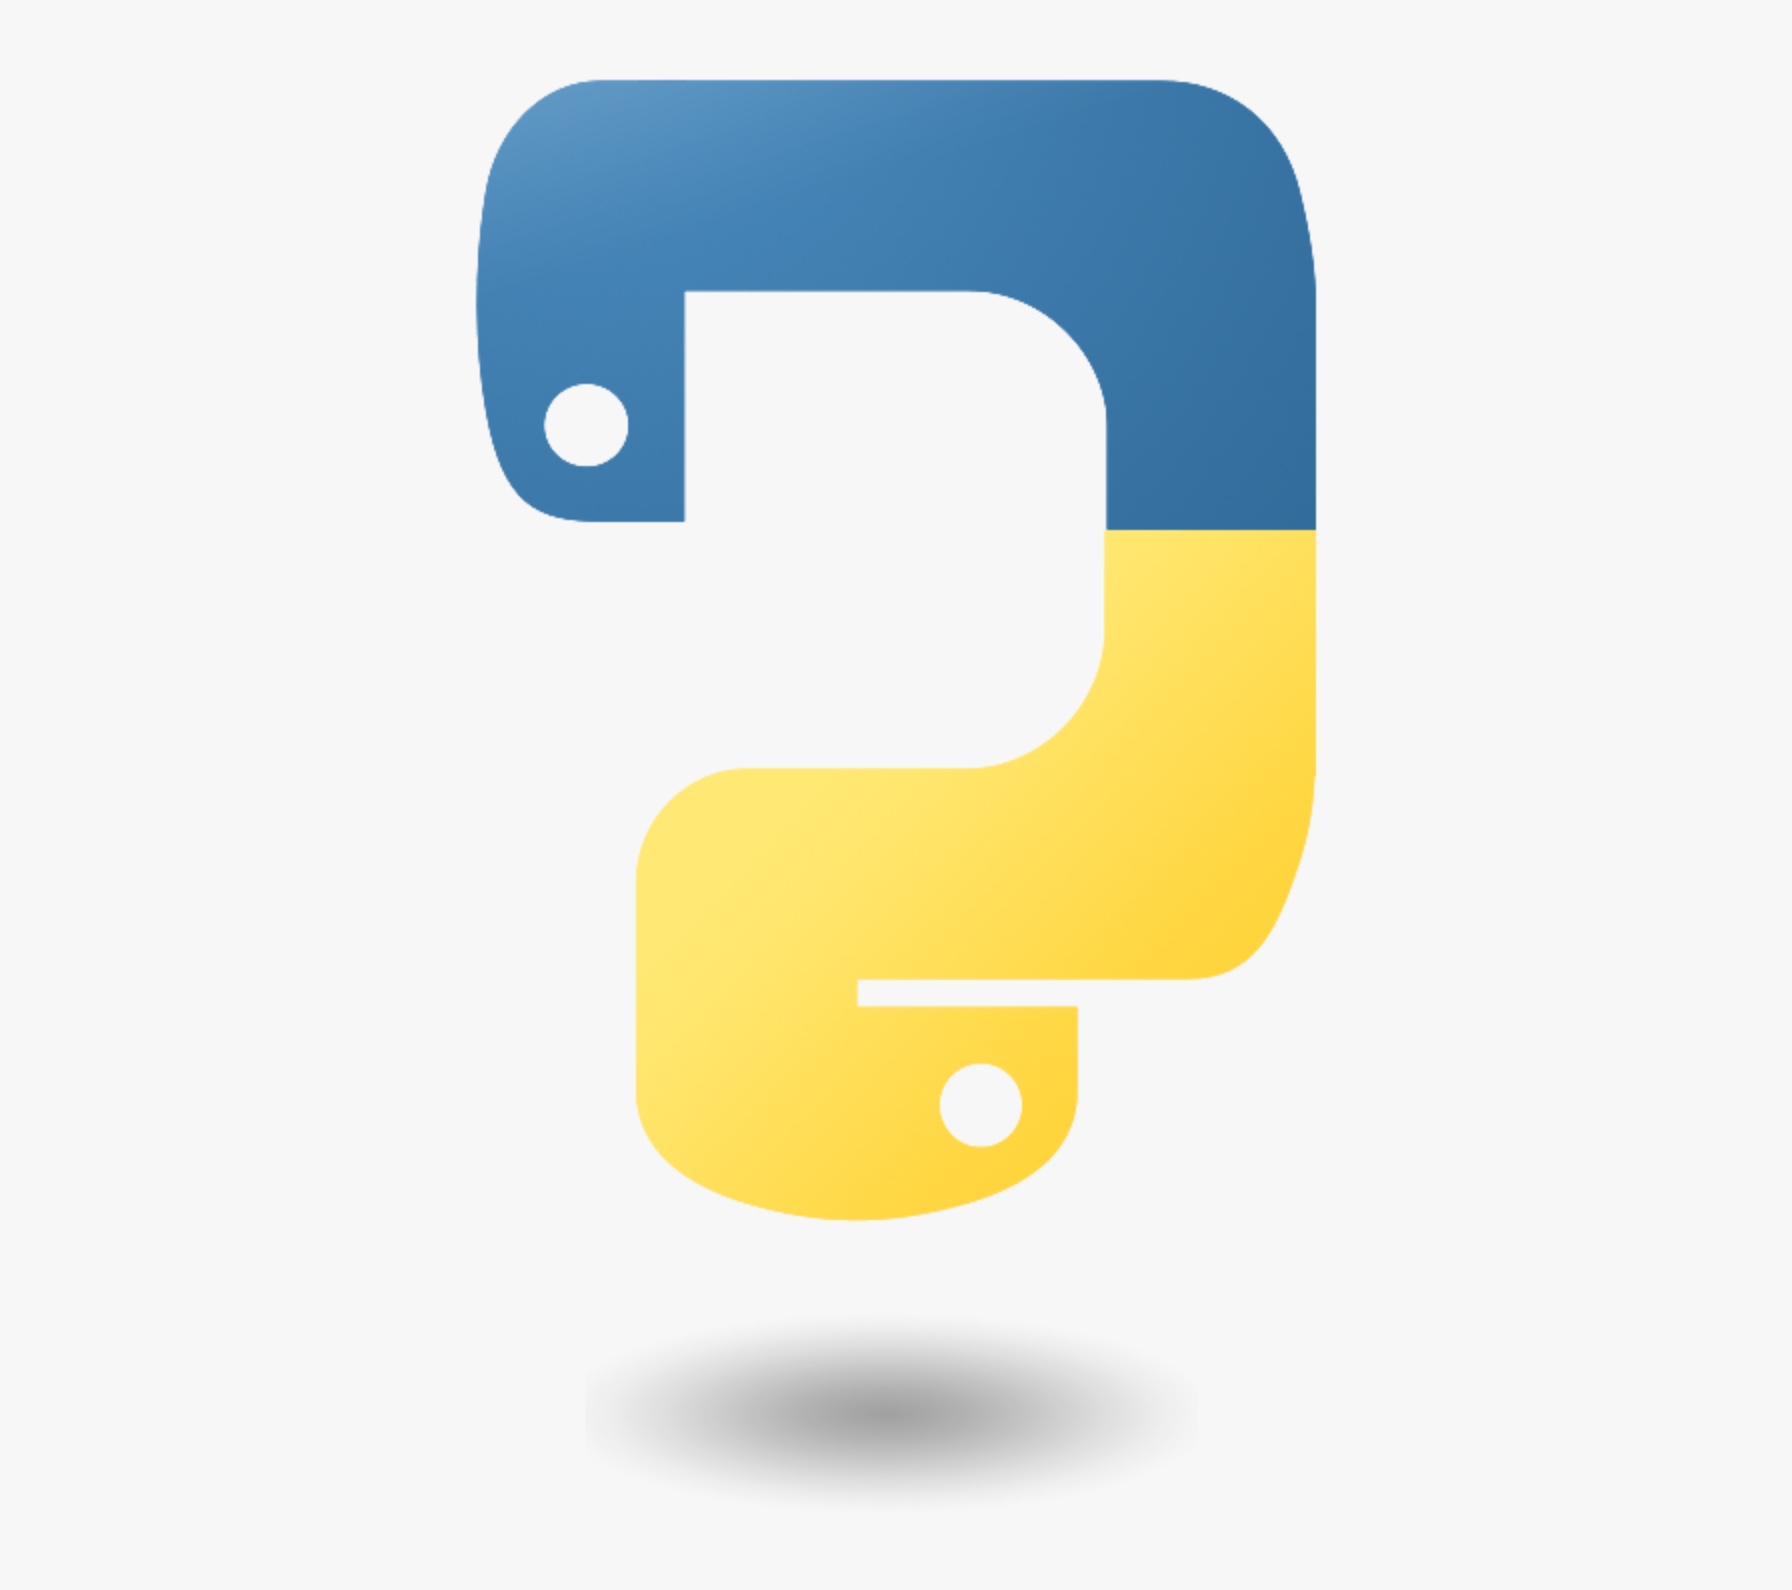 Логотип языка python. Язык програмирония пион логотип. Значок Python. Python язык программирования лого. Питон язык программирования лого.